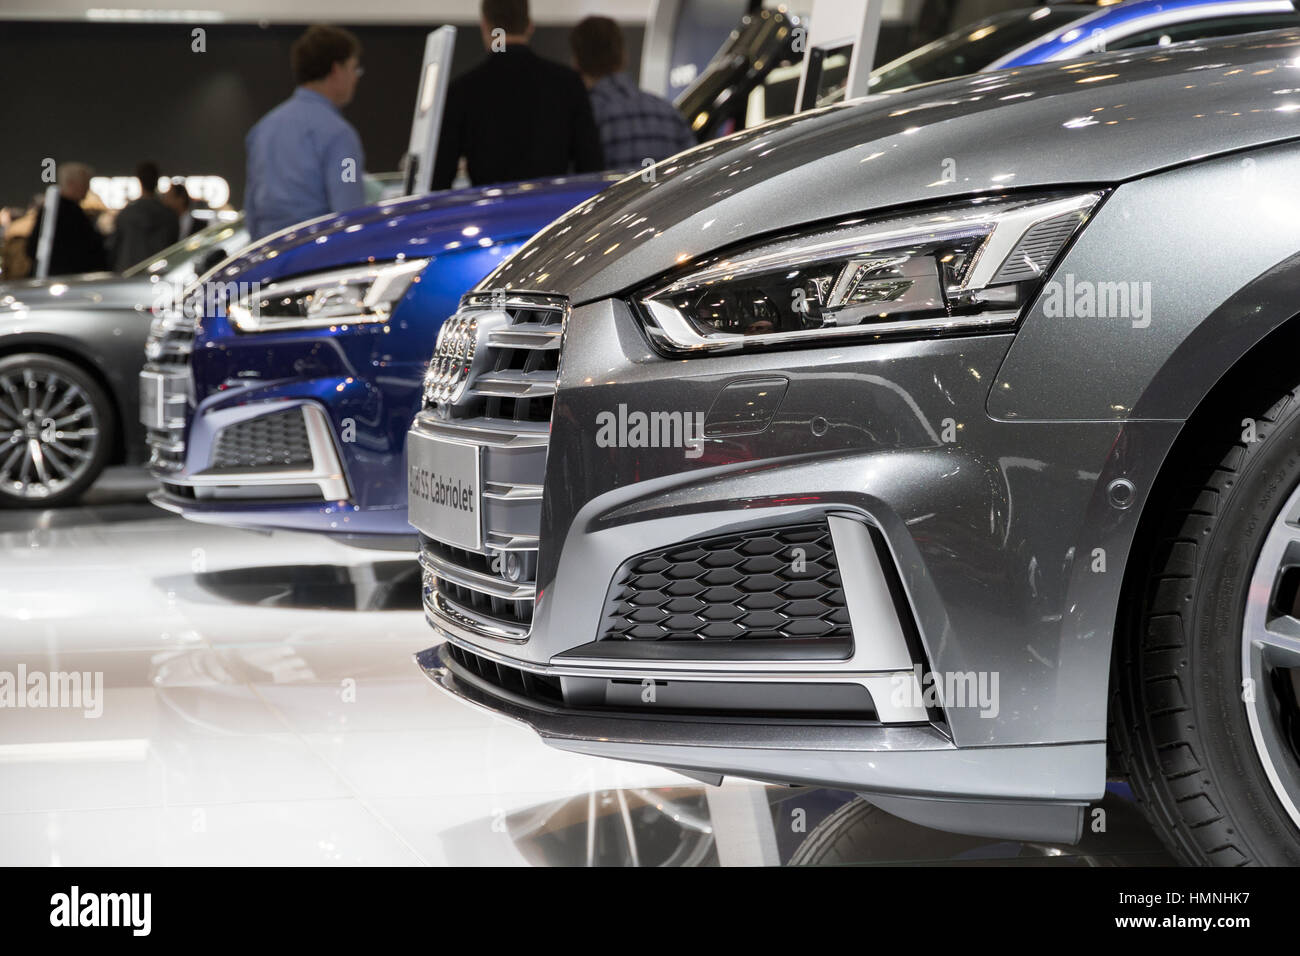 Bruselas - Jan 19, 2017: los nuevos coches Audi en exhibición en el Motor Show de Bruselas. Foto de stock